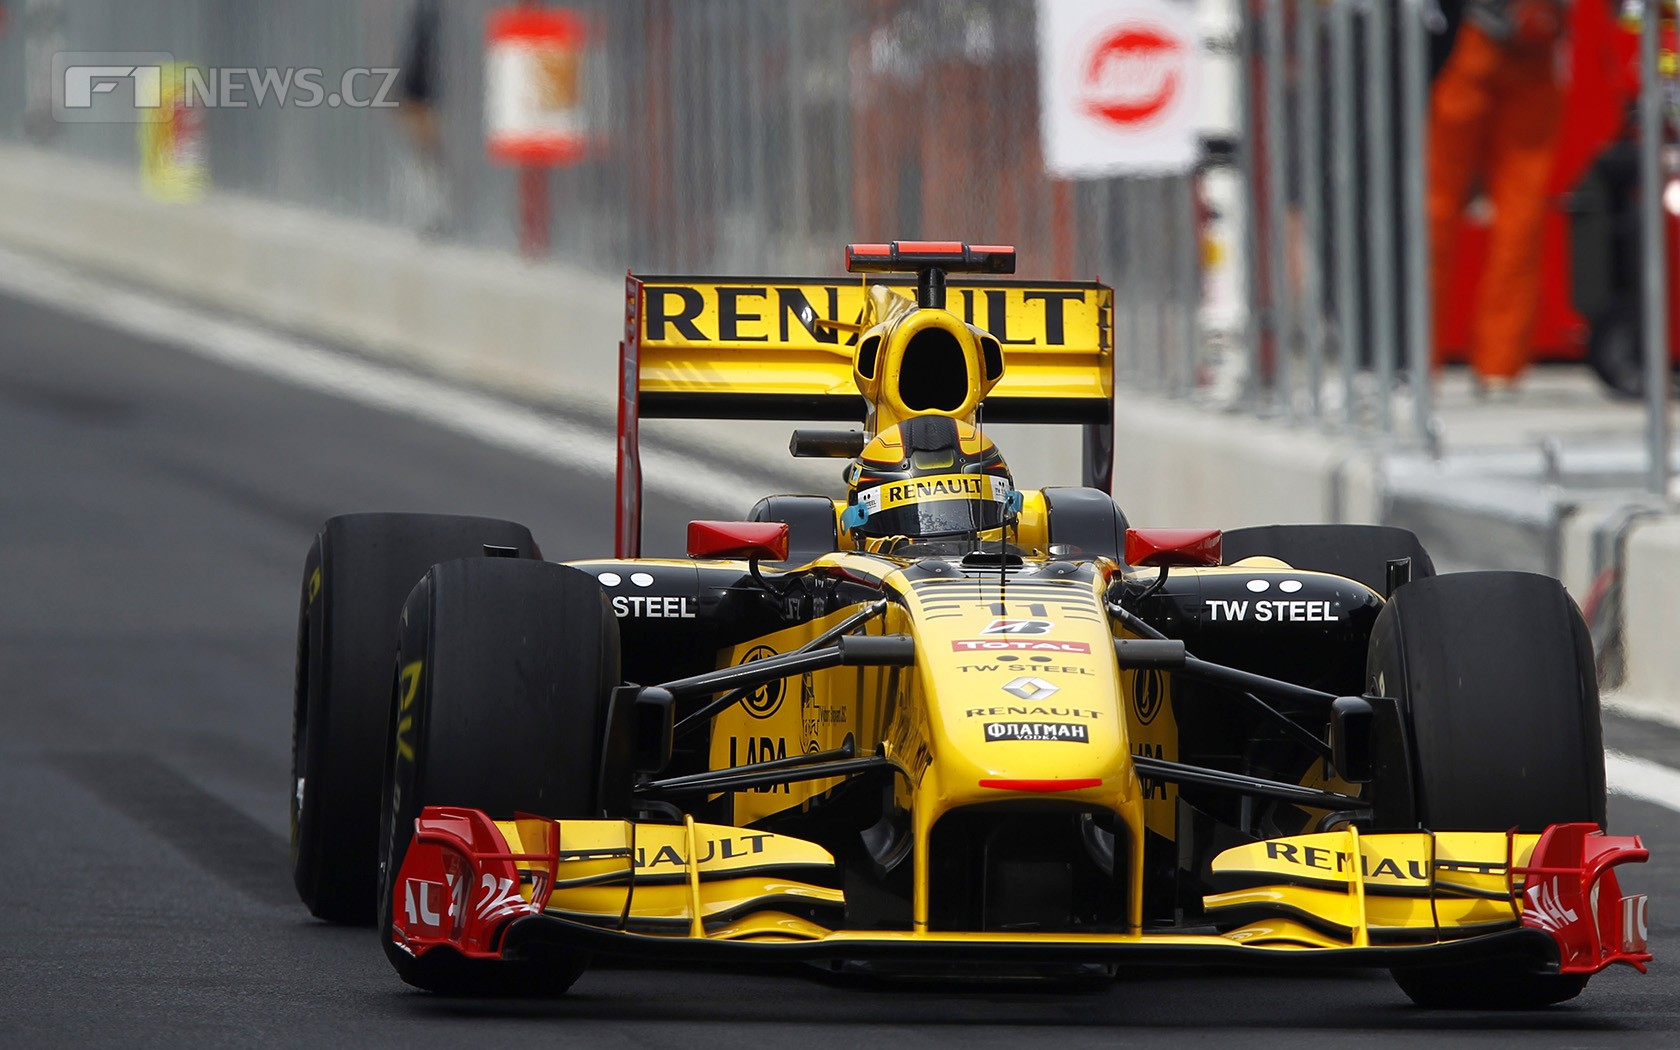 Většina lidí se shoduje, že v sezoně 2016 budeme vídat žluté monoposty Renault. Ale bude tomu tak opravdu?